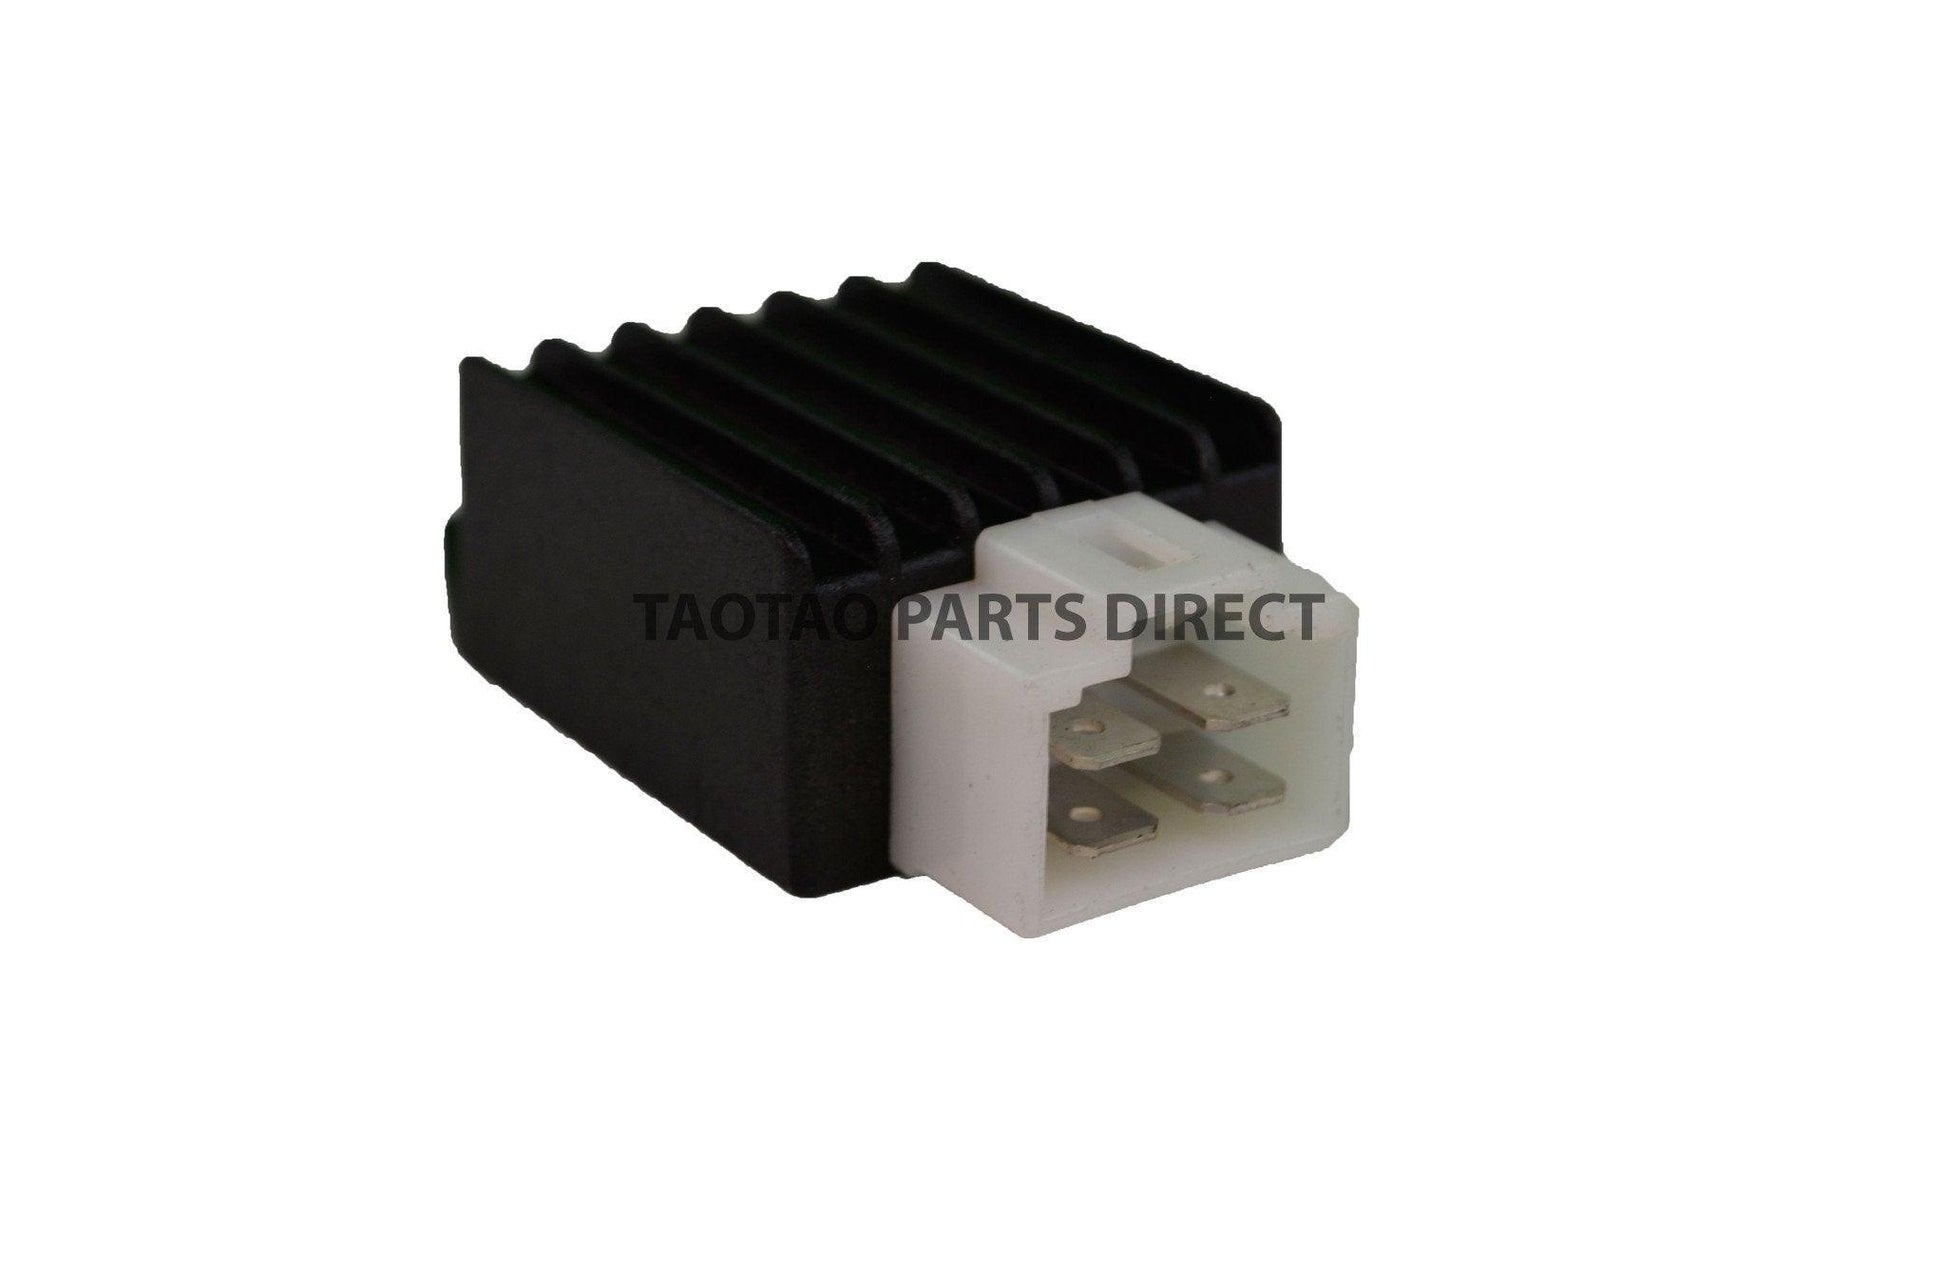 Voltage Regulator / Rectifier - TaoTaoPartsDirect.com